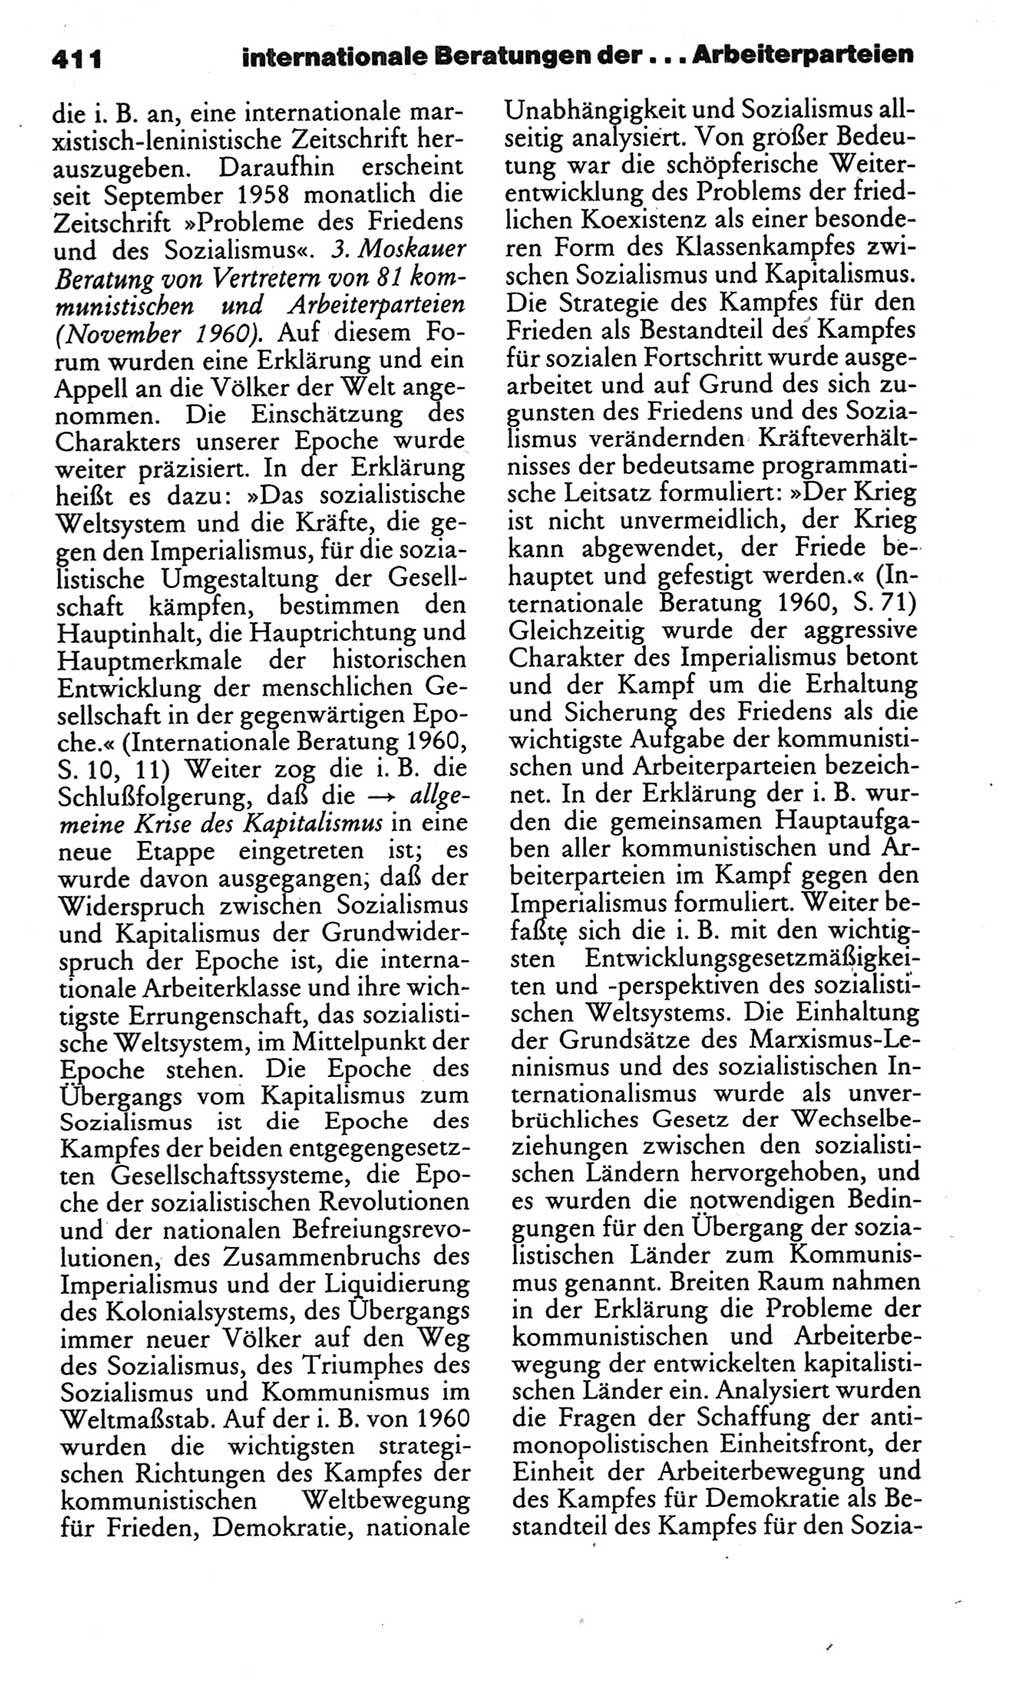 Kleines politisches Wörterbuch [Deutsche Demokratische Republik (DDR)] 1986, Seite 411 (Kl. pol. Wb. DDR 1986, S. 411)